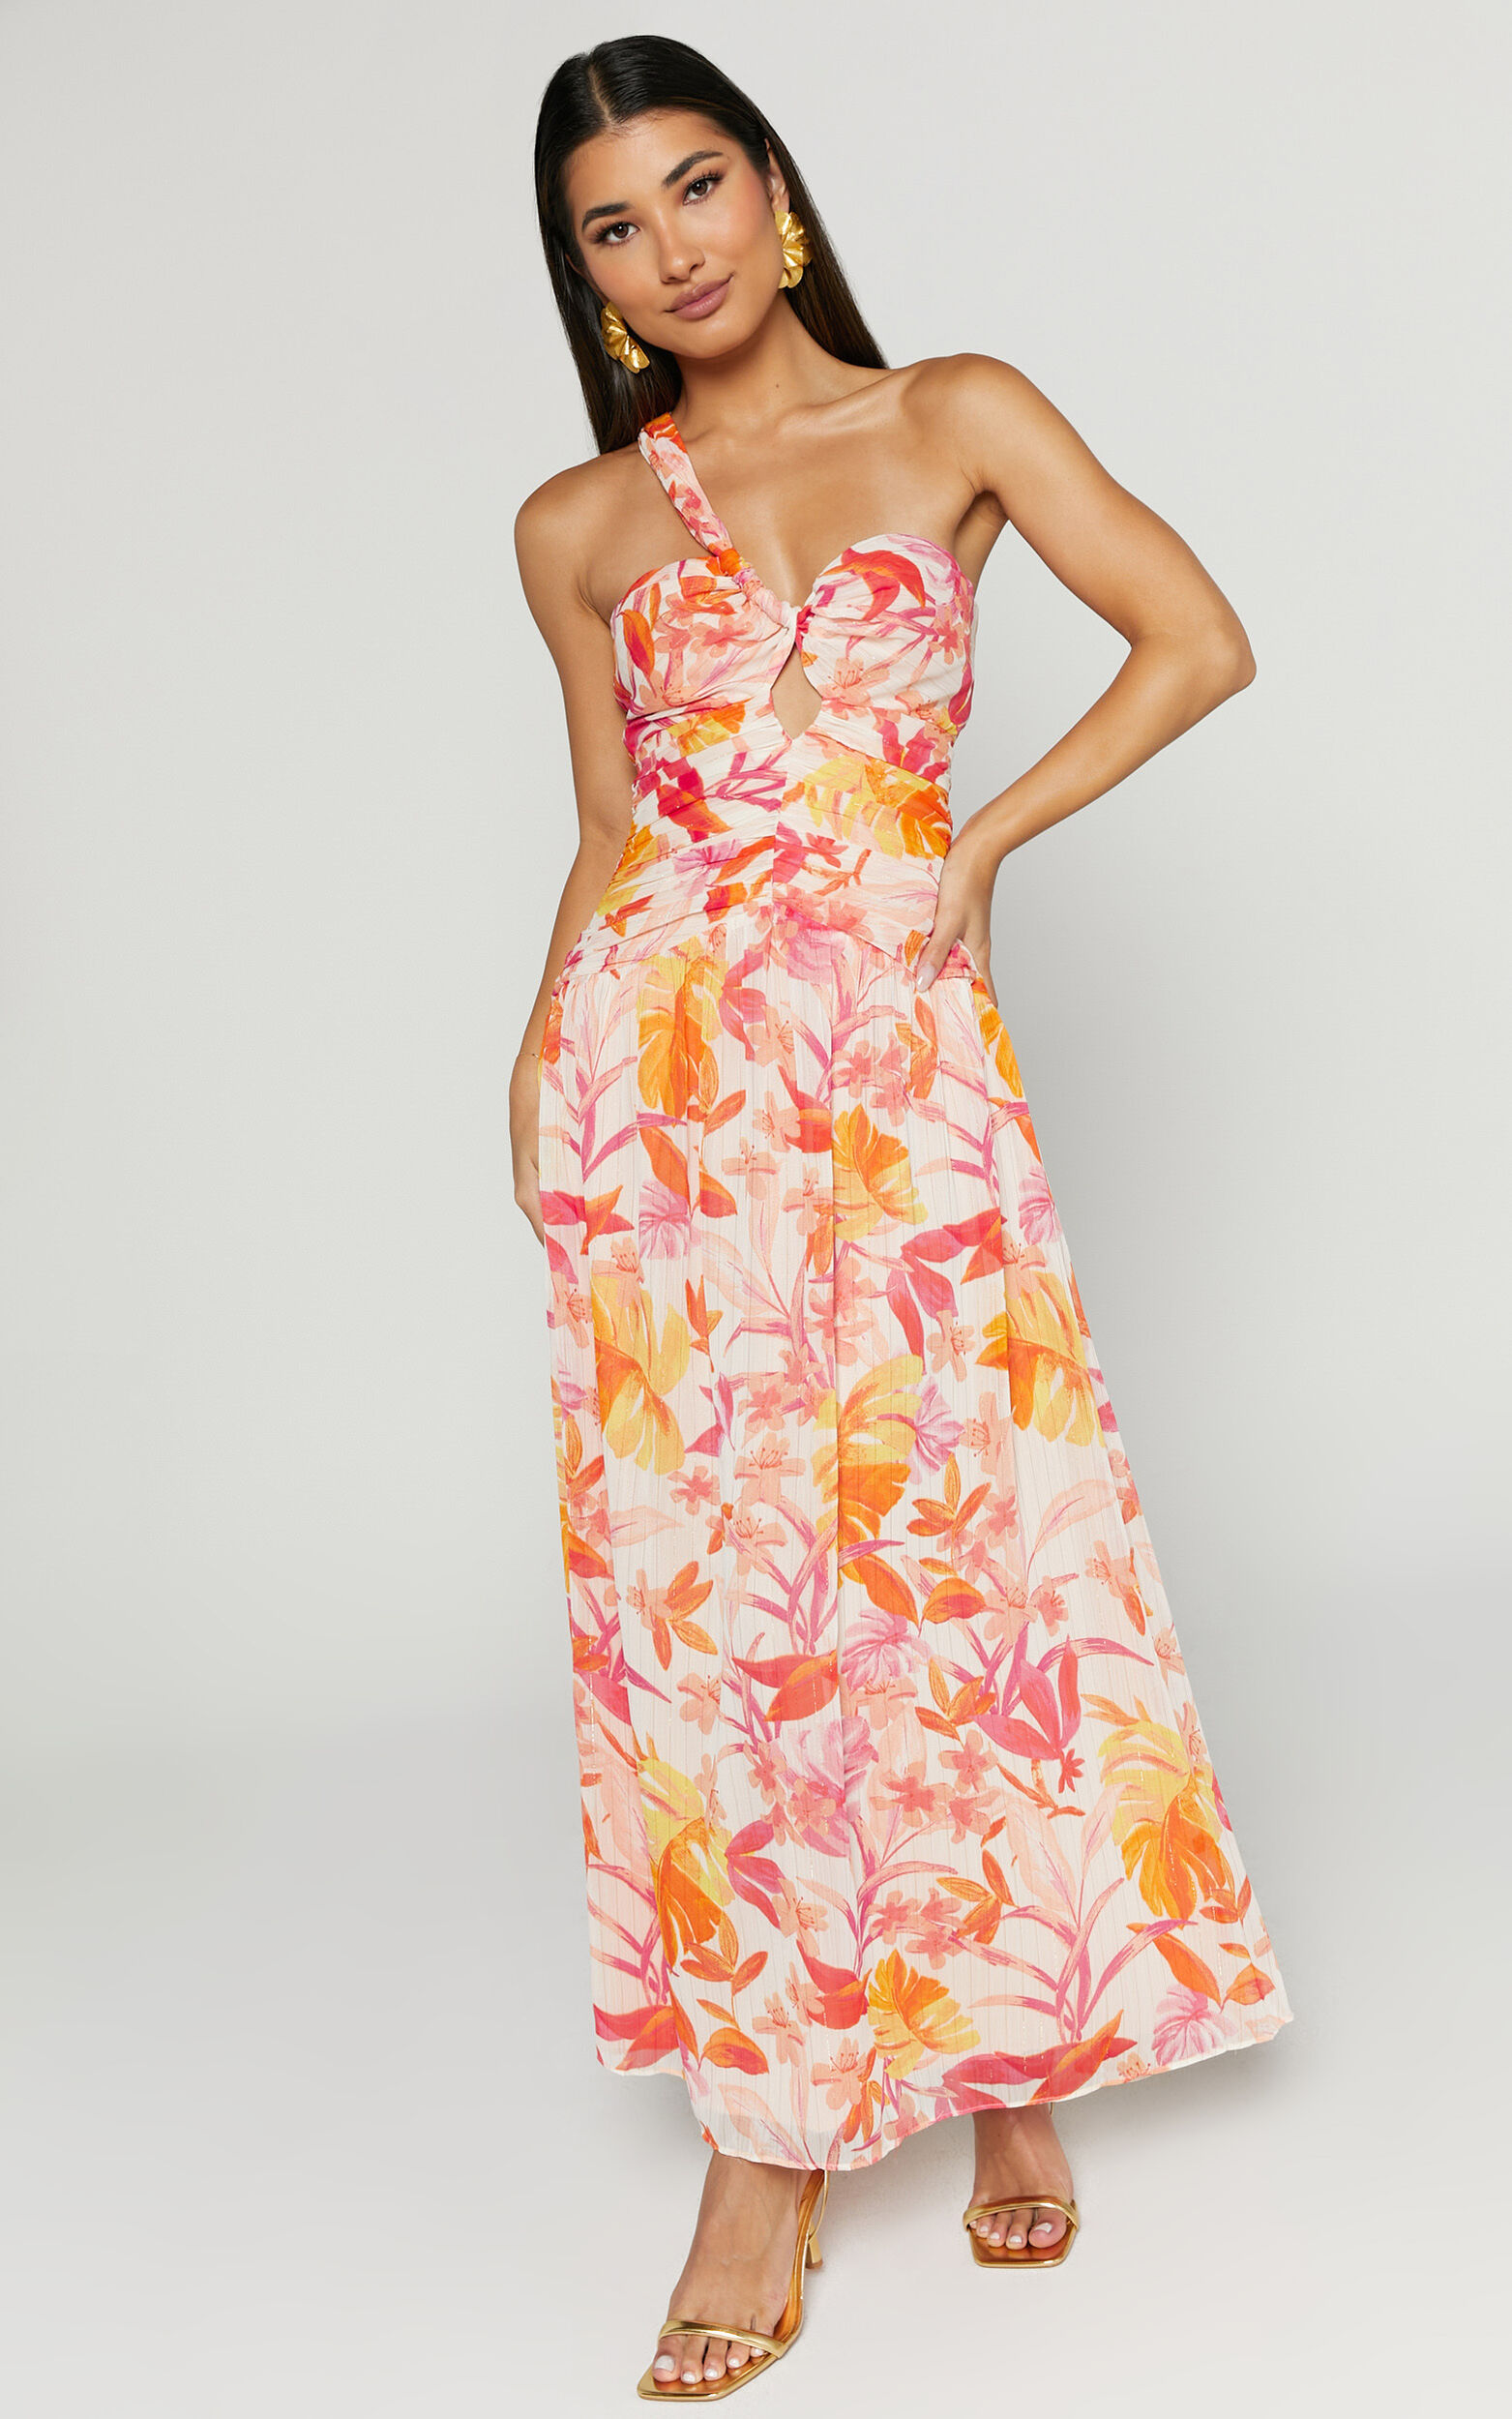 Ferlynn Maxi Dress - One Shoulder Sweetheart Dress in Multi | Showpo USA